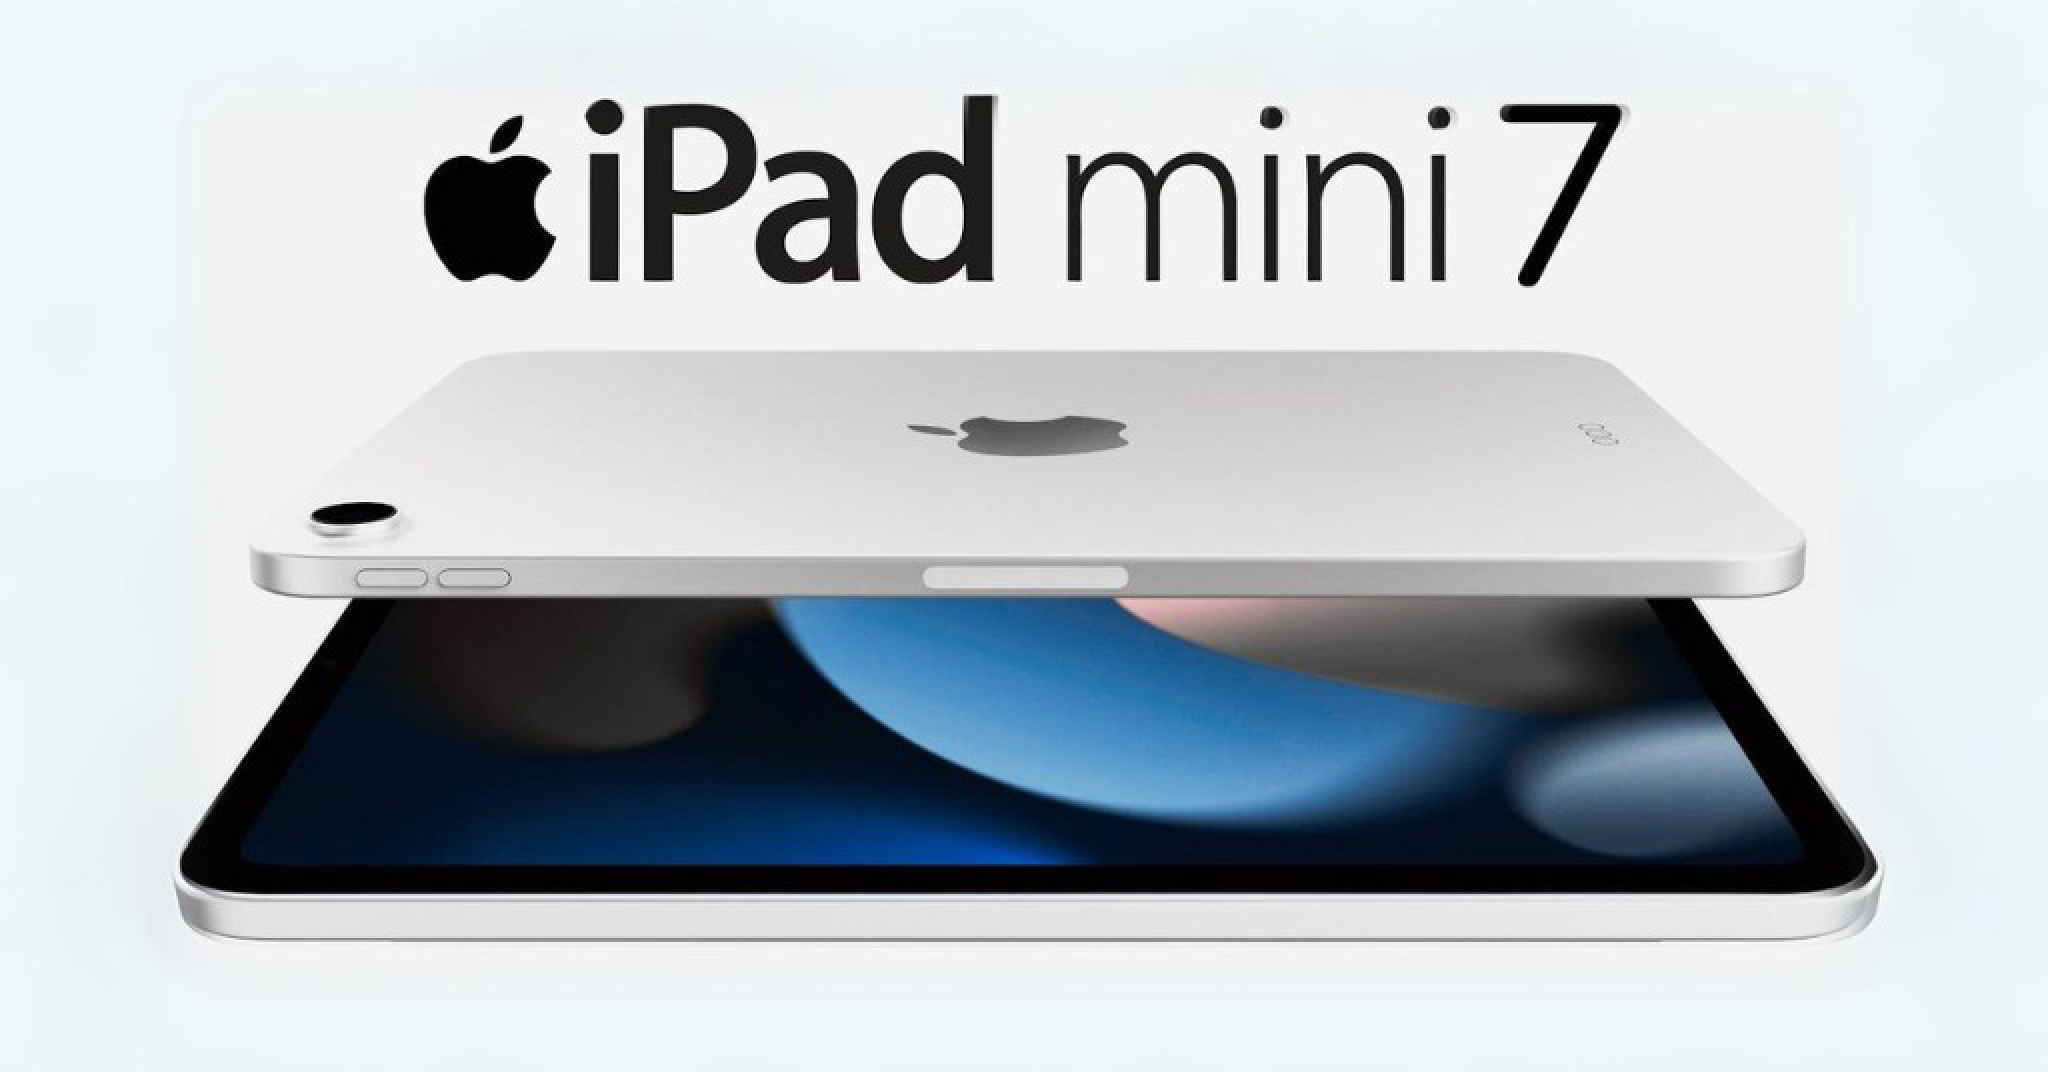 Mình nghĩ chúng ta đã phải chờ quá lâu cho sự xuất hiện của iPad mini...